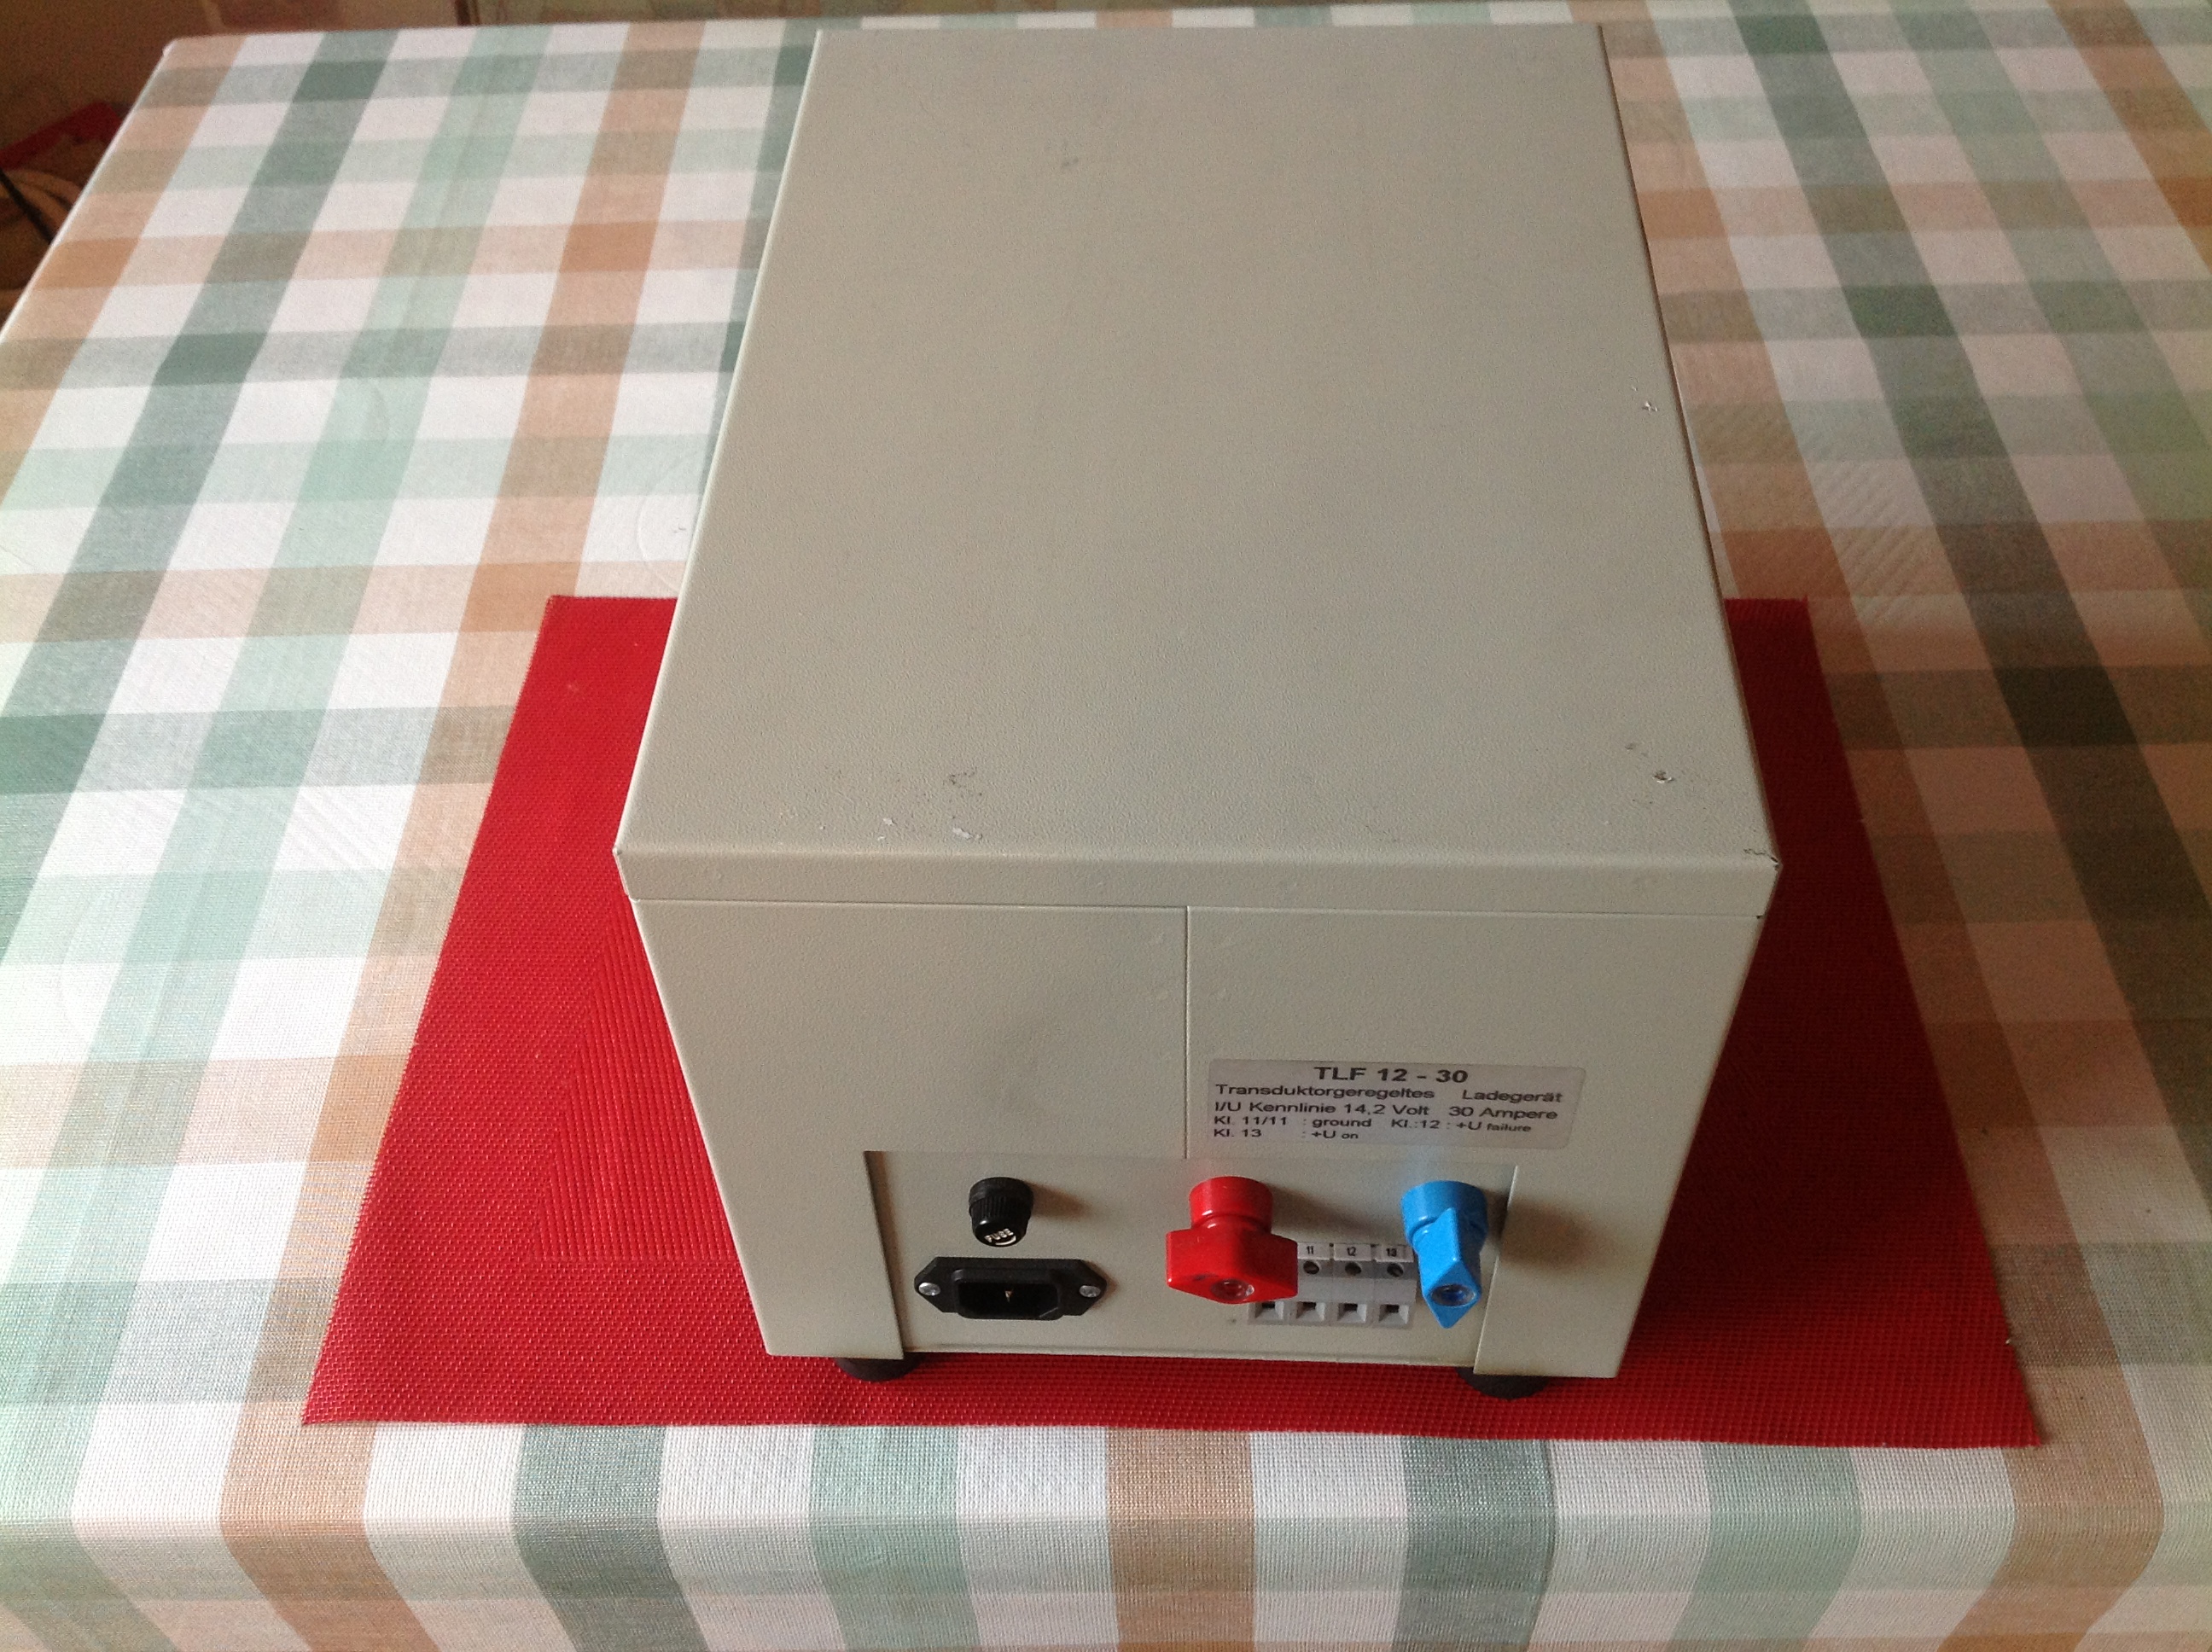 Transduktorgeregeltes Ladegerät "Transwatt" Mod. TLF 12-30 12 V, 30 A